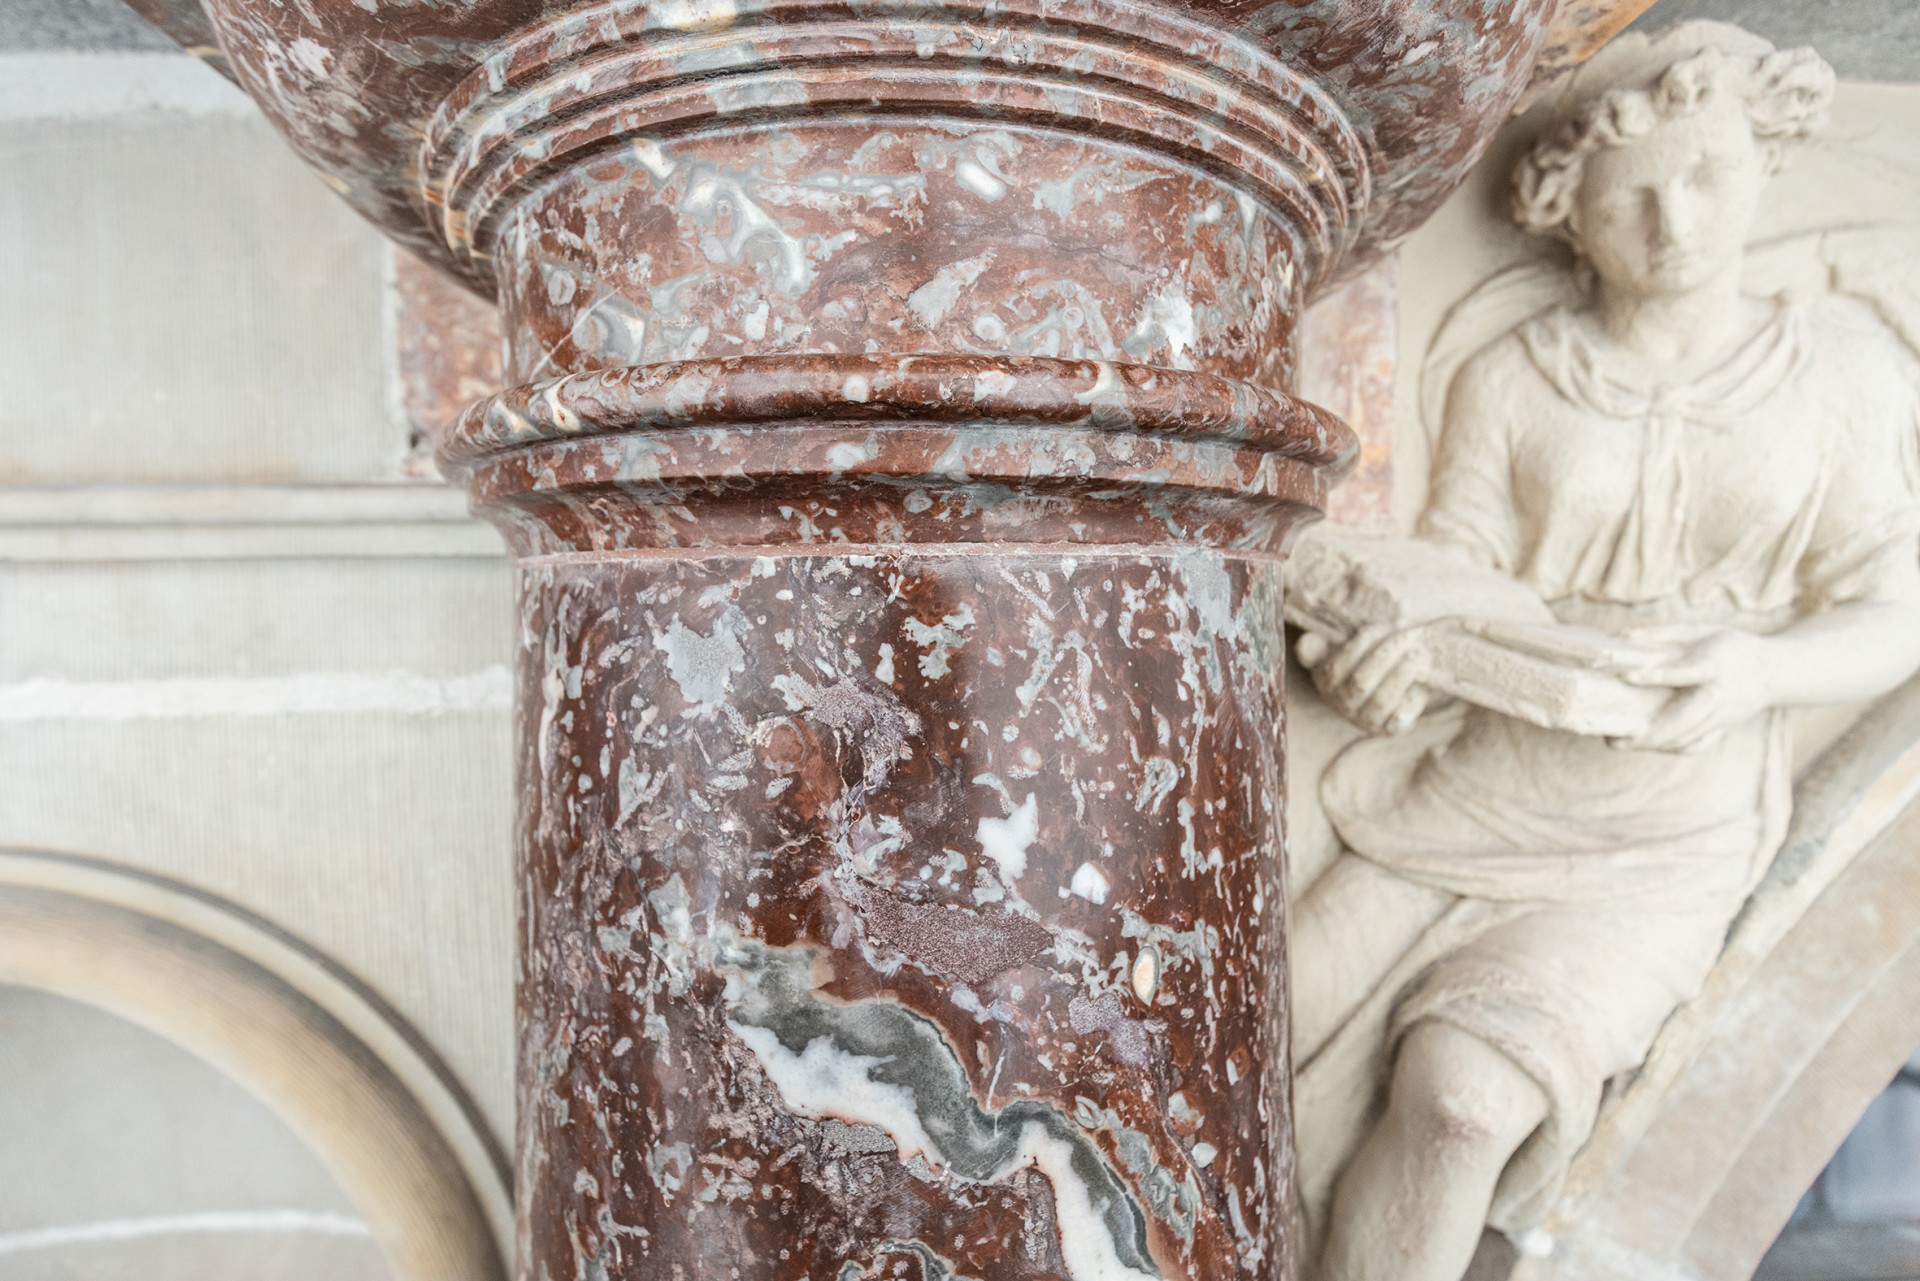 Gerestaureerde rode marmeren zuil met een figuur in witte steen naast.